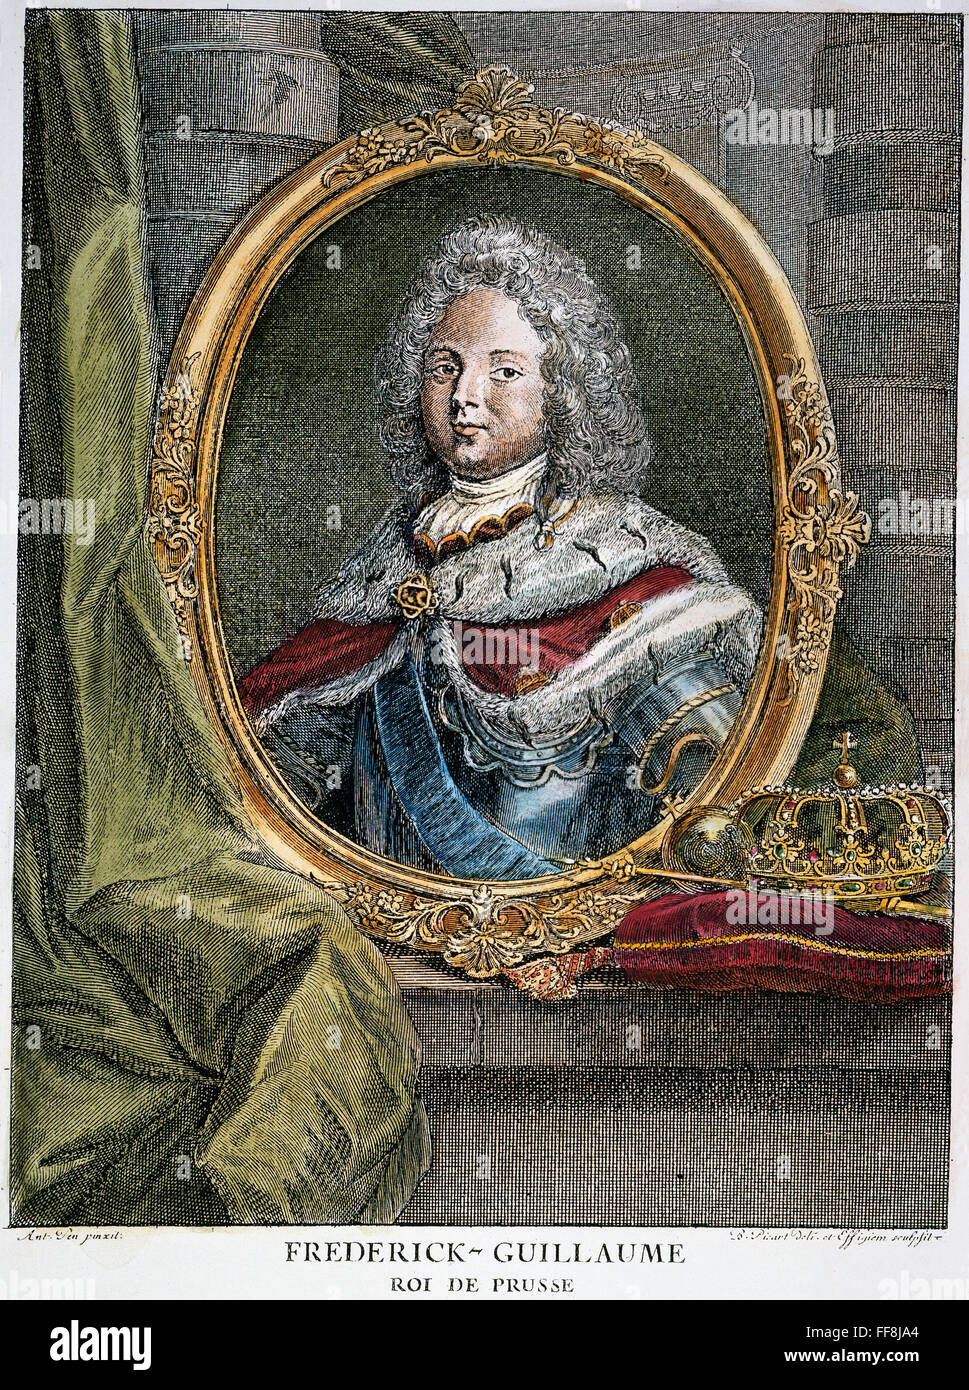 Federico Guillermo I /n(1688-1740). King of Prussia, 1713-40. Grabado francés contemporáneo. Foto de stock